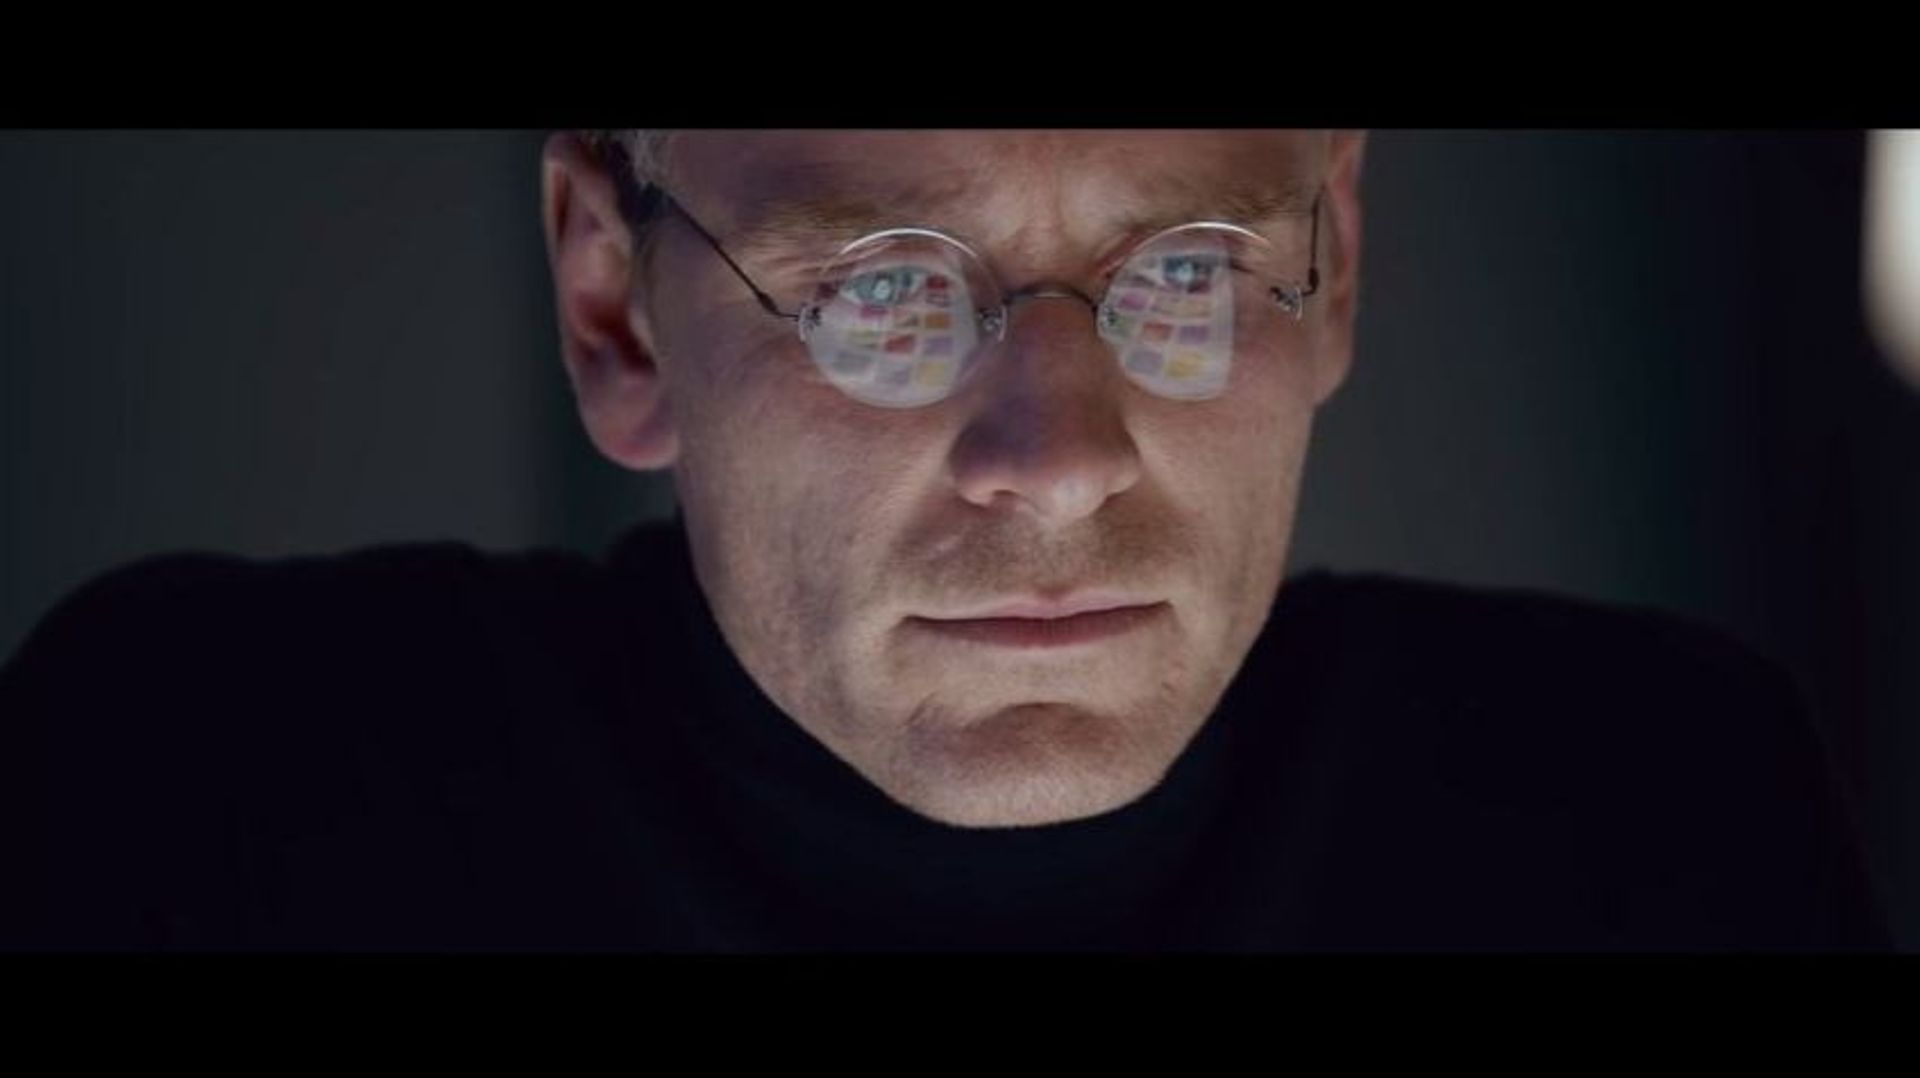 Le nouveau biopic de "Steve Jobs" présenté au Festival de Telluride